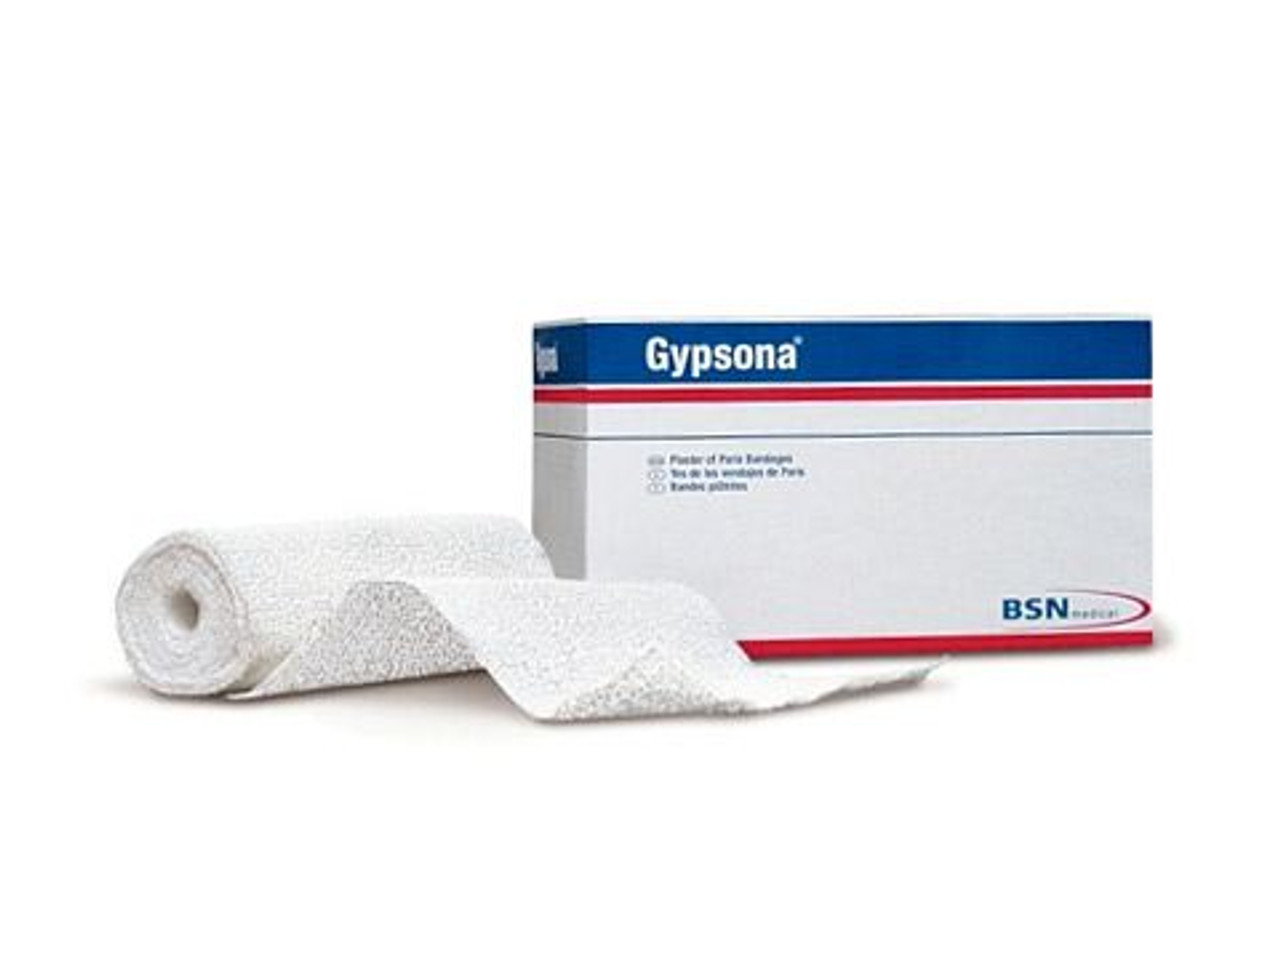 Gypsona HP Plaster Bandage Extra Fast